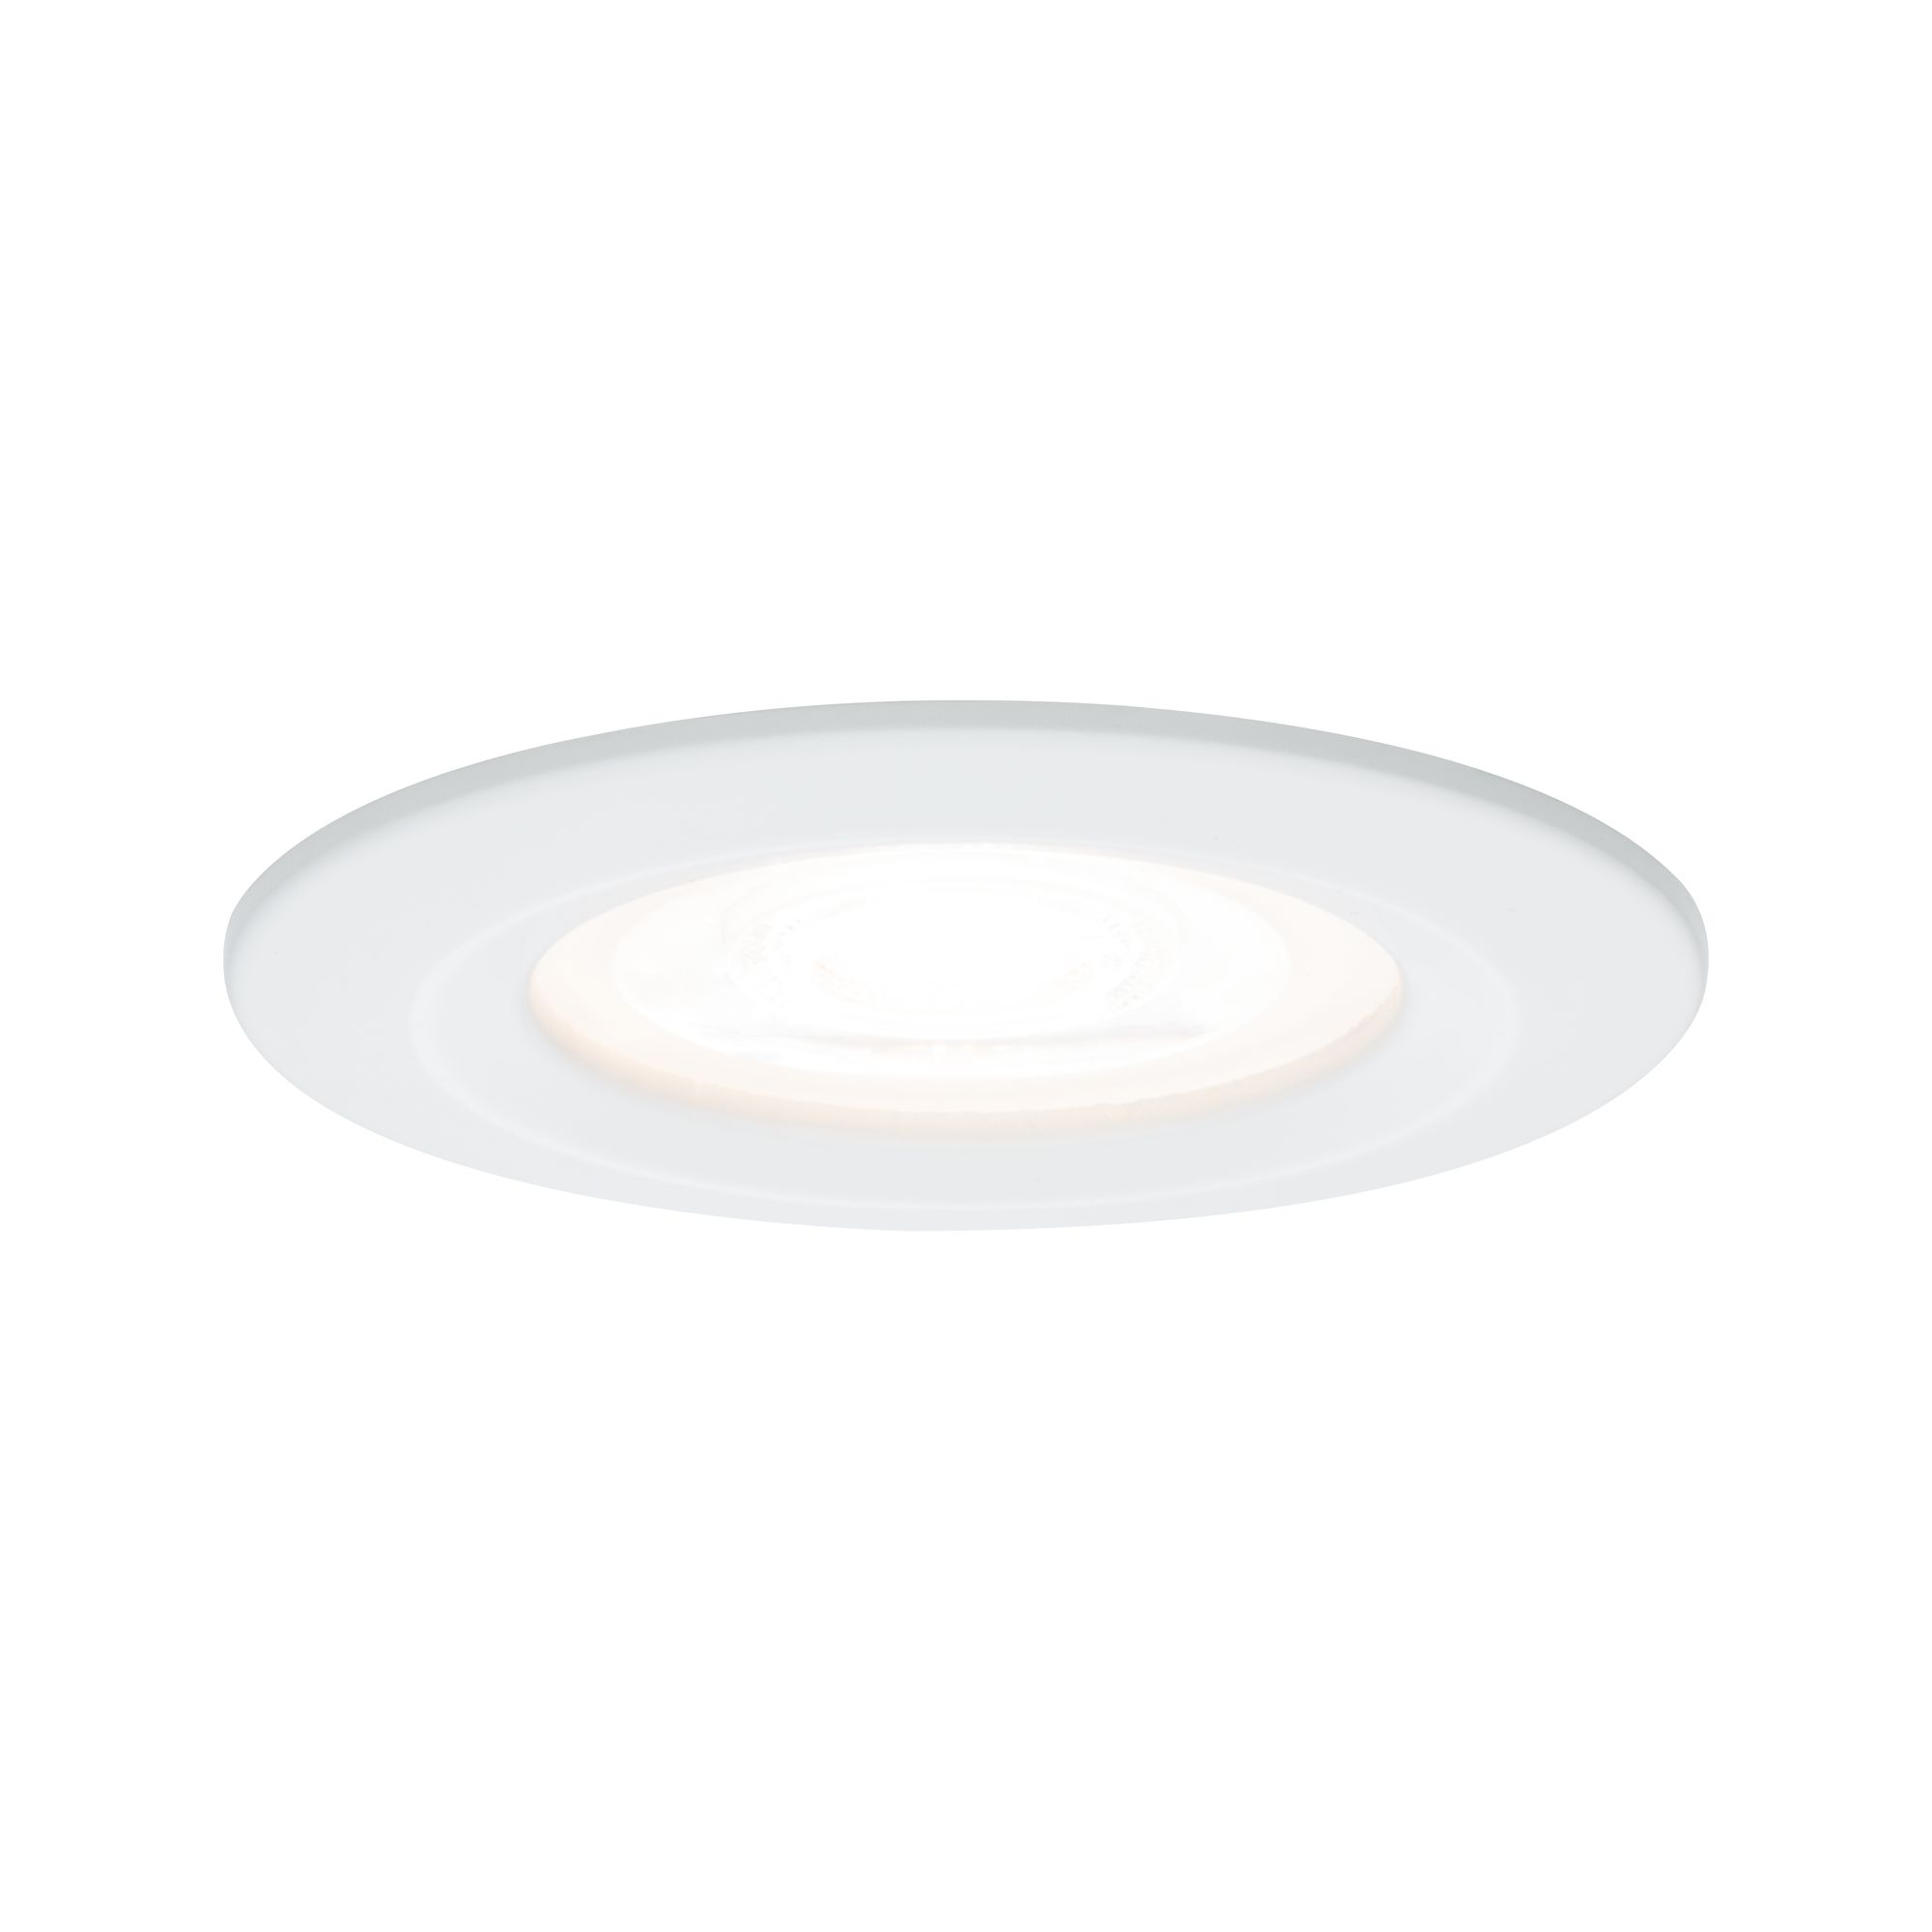 PAULMANN - Vestavné svítidlo LED Nova kruhové 1x6,5W GU10 bílá mat nevýklopné, P 93441